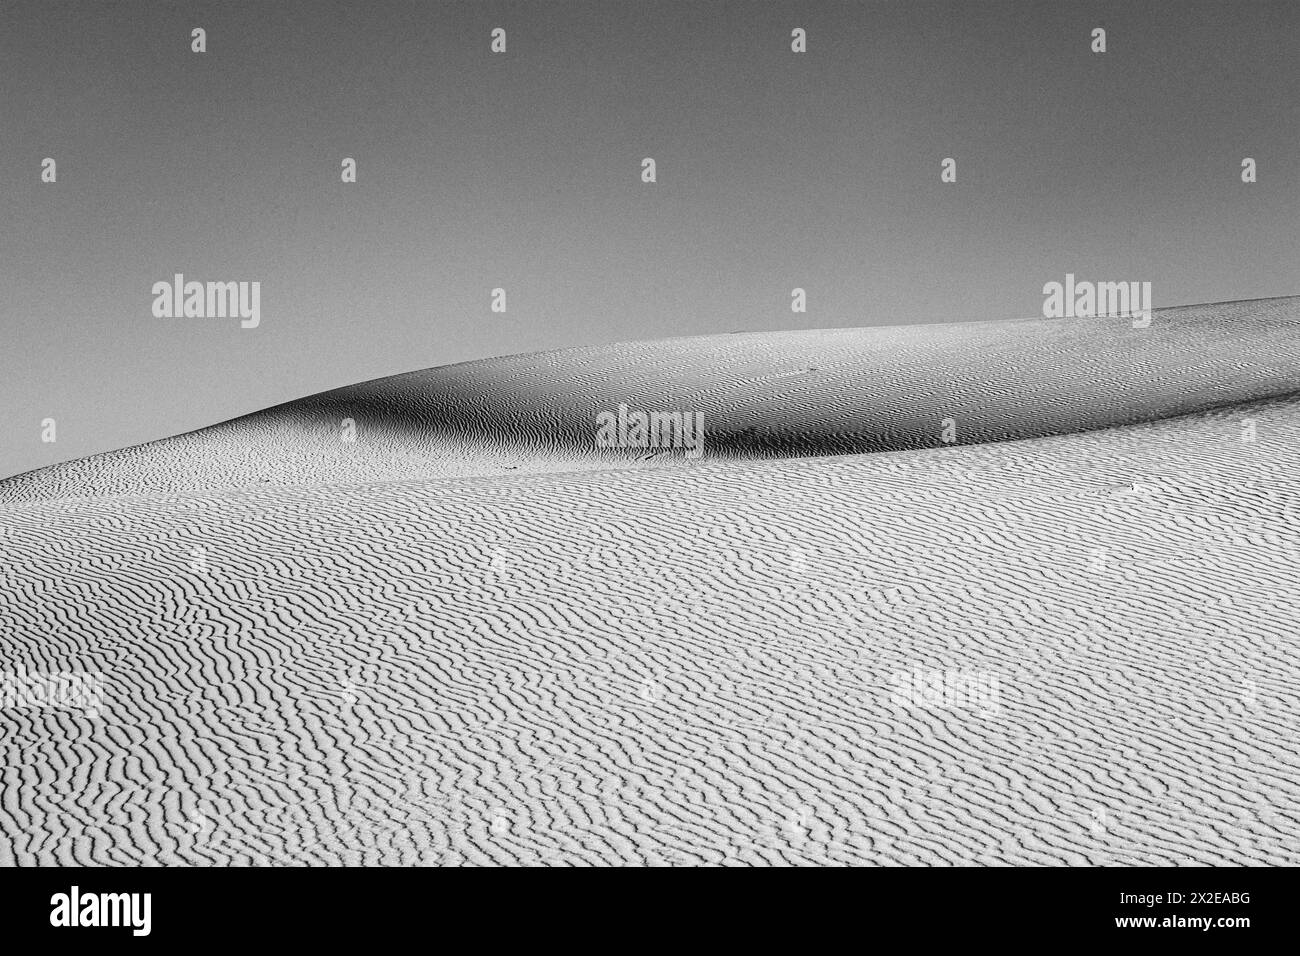 Vagues chatoyantes, motifs et textures sur une dune de sable. Banque D'Images